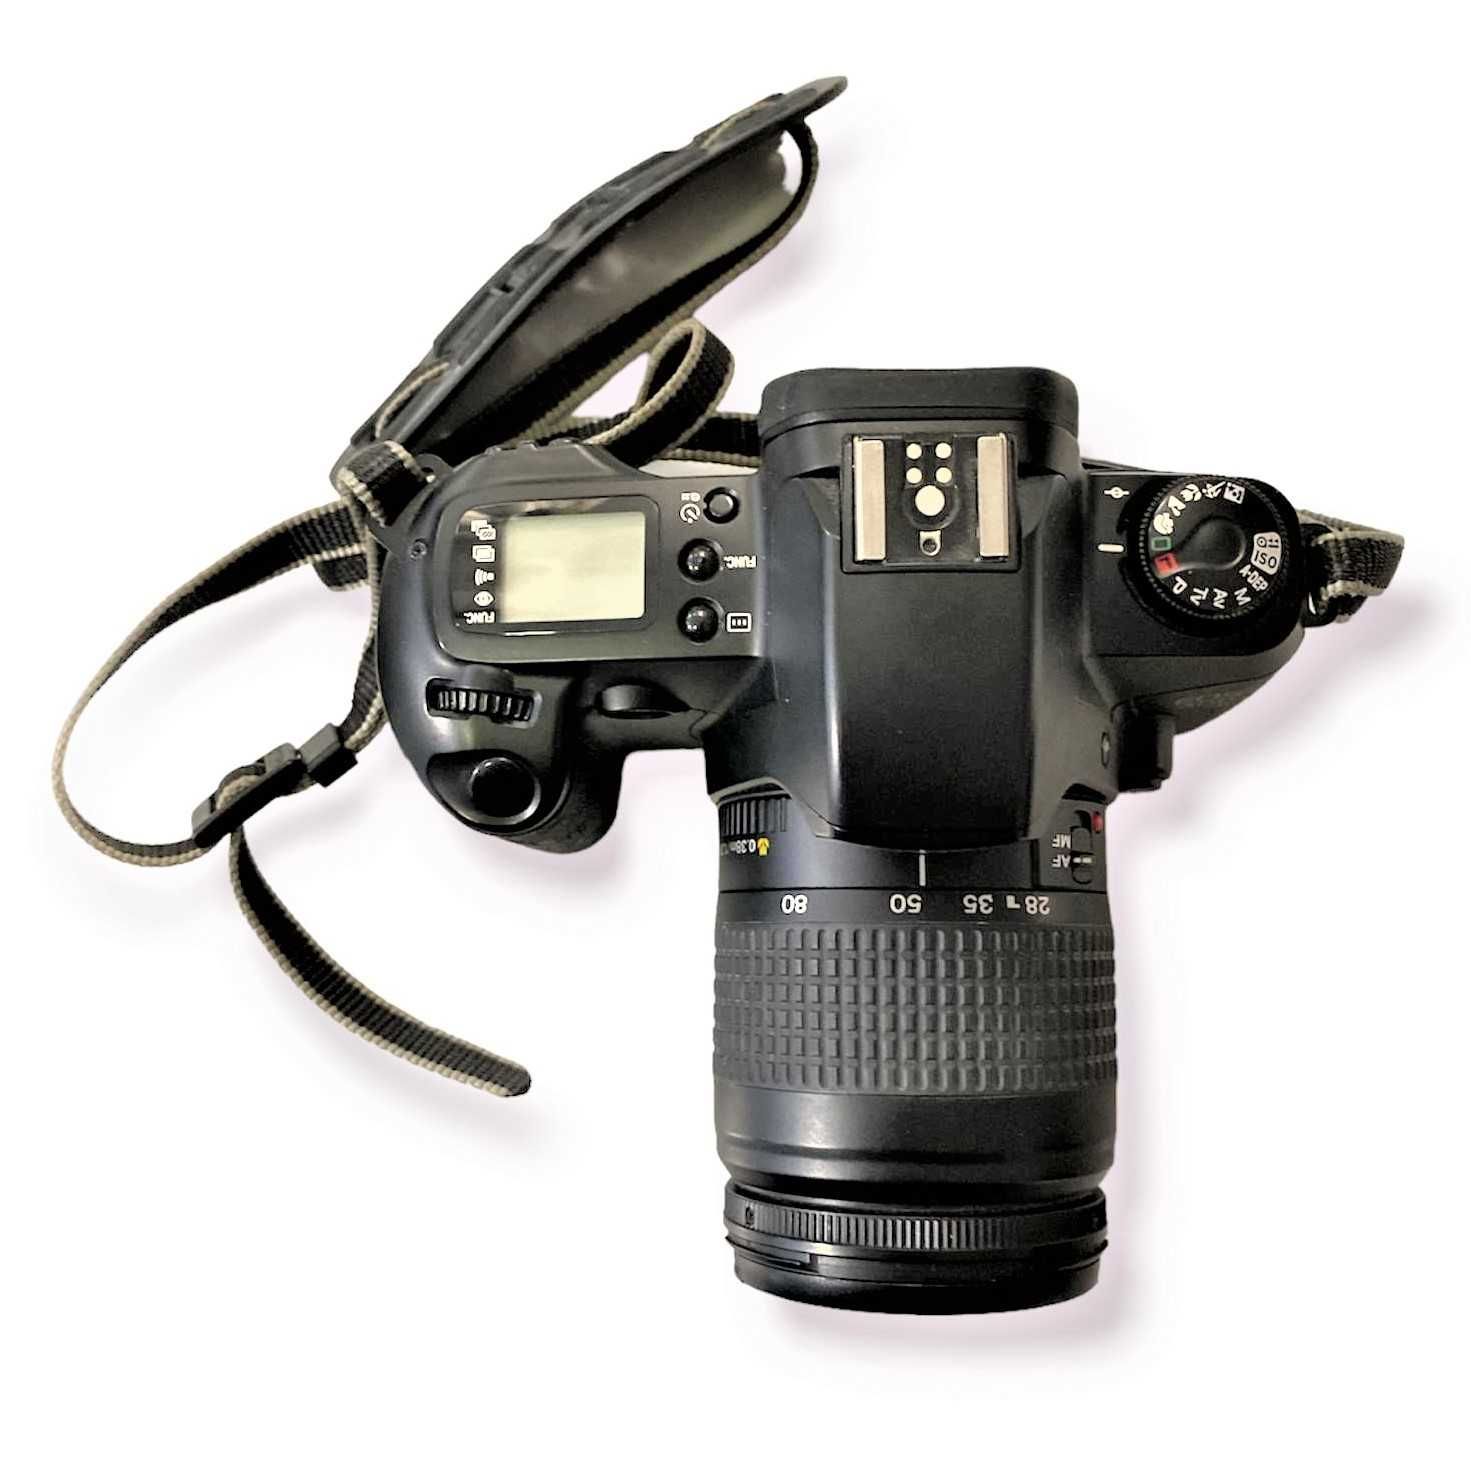 Maquina Fotografica Canon EOS 500 N c/Obj. 28-80mm